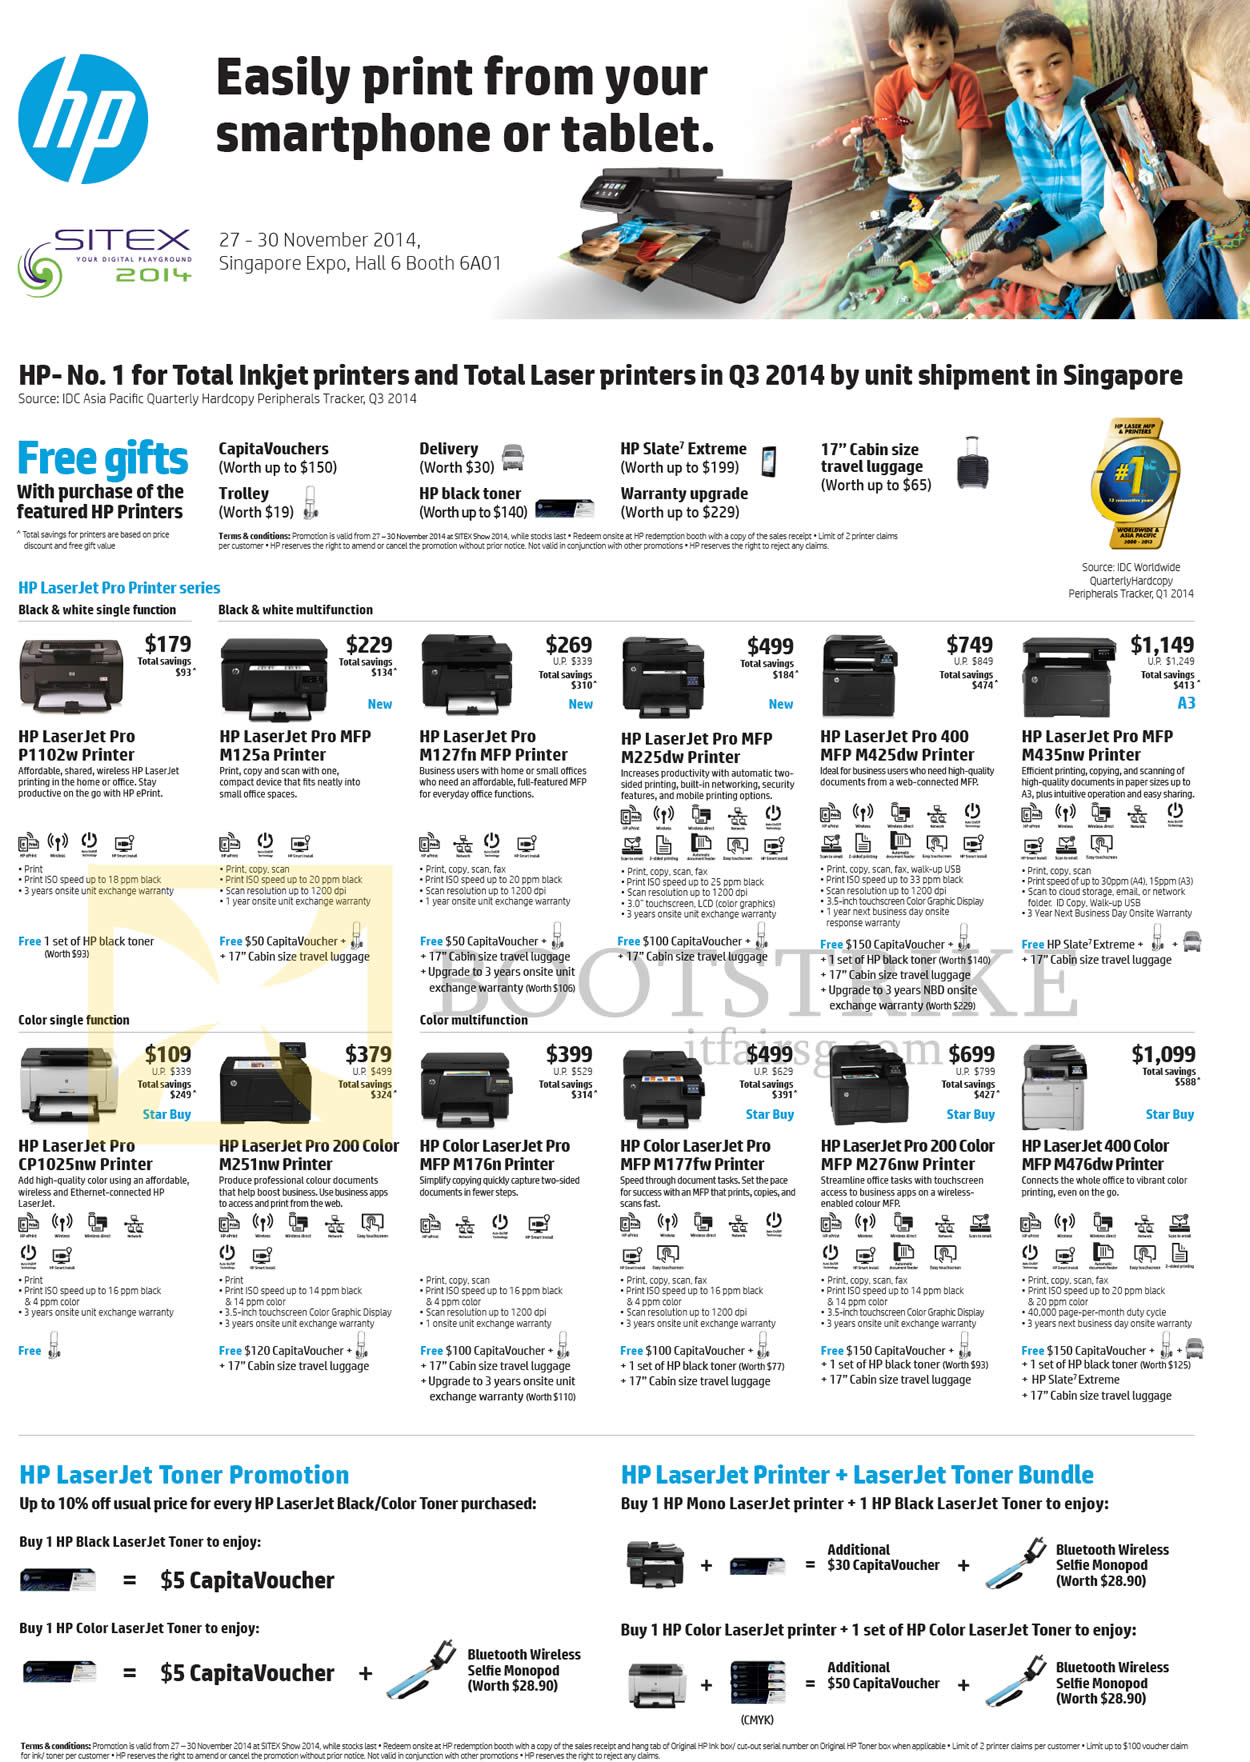 SITEX 2014 price list image brochure of HP Printers LaserJet Pro P1102w, M125a, M225dw, M425dw, M435nw, CP1025nw, M251nw, M176n, M177fw, M276nw, M476dw